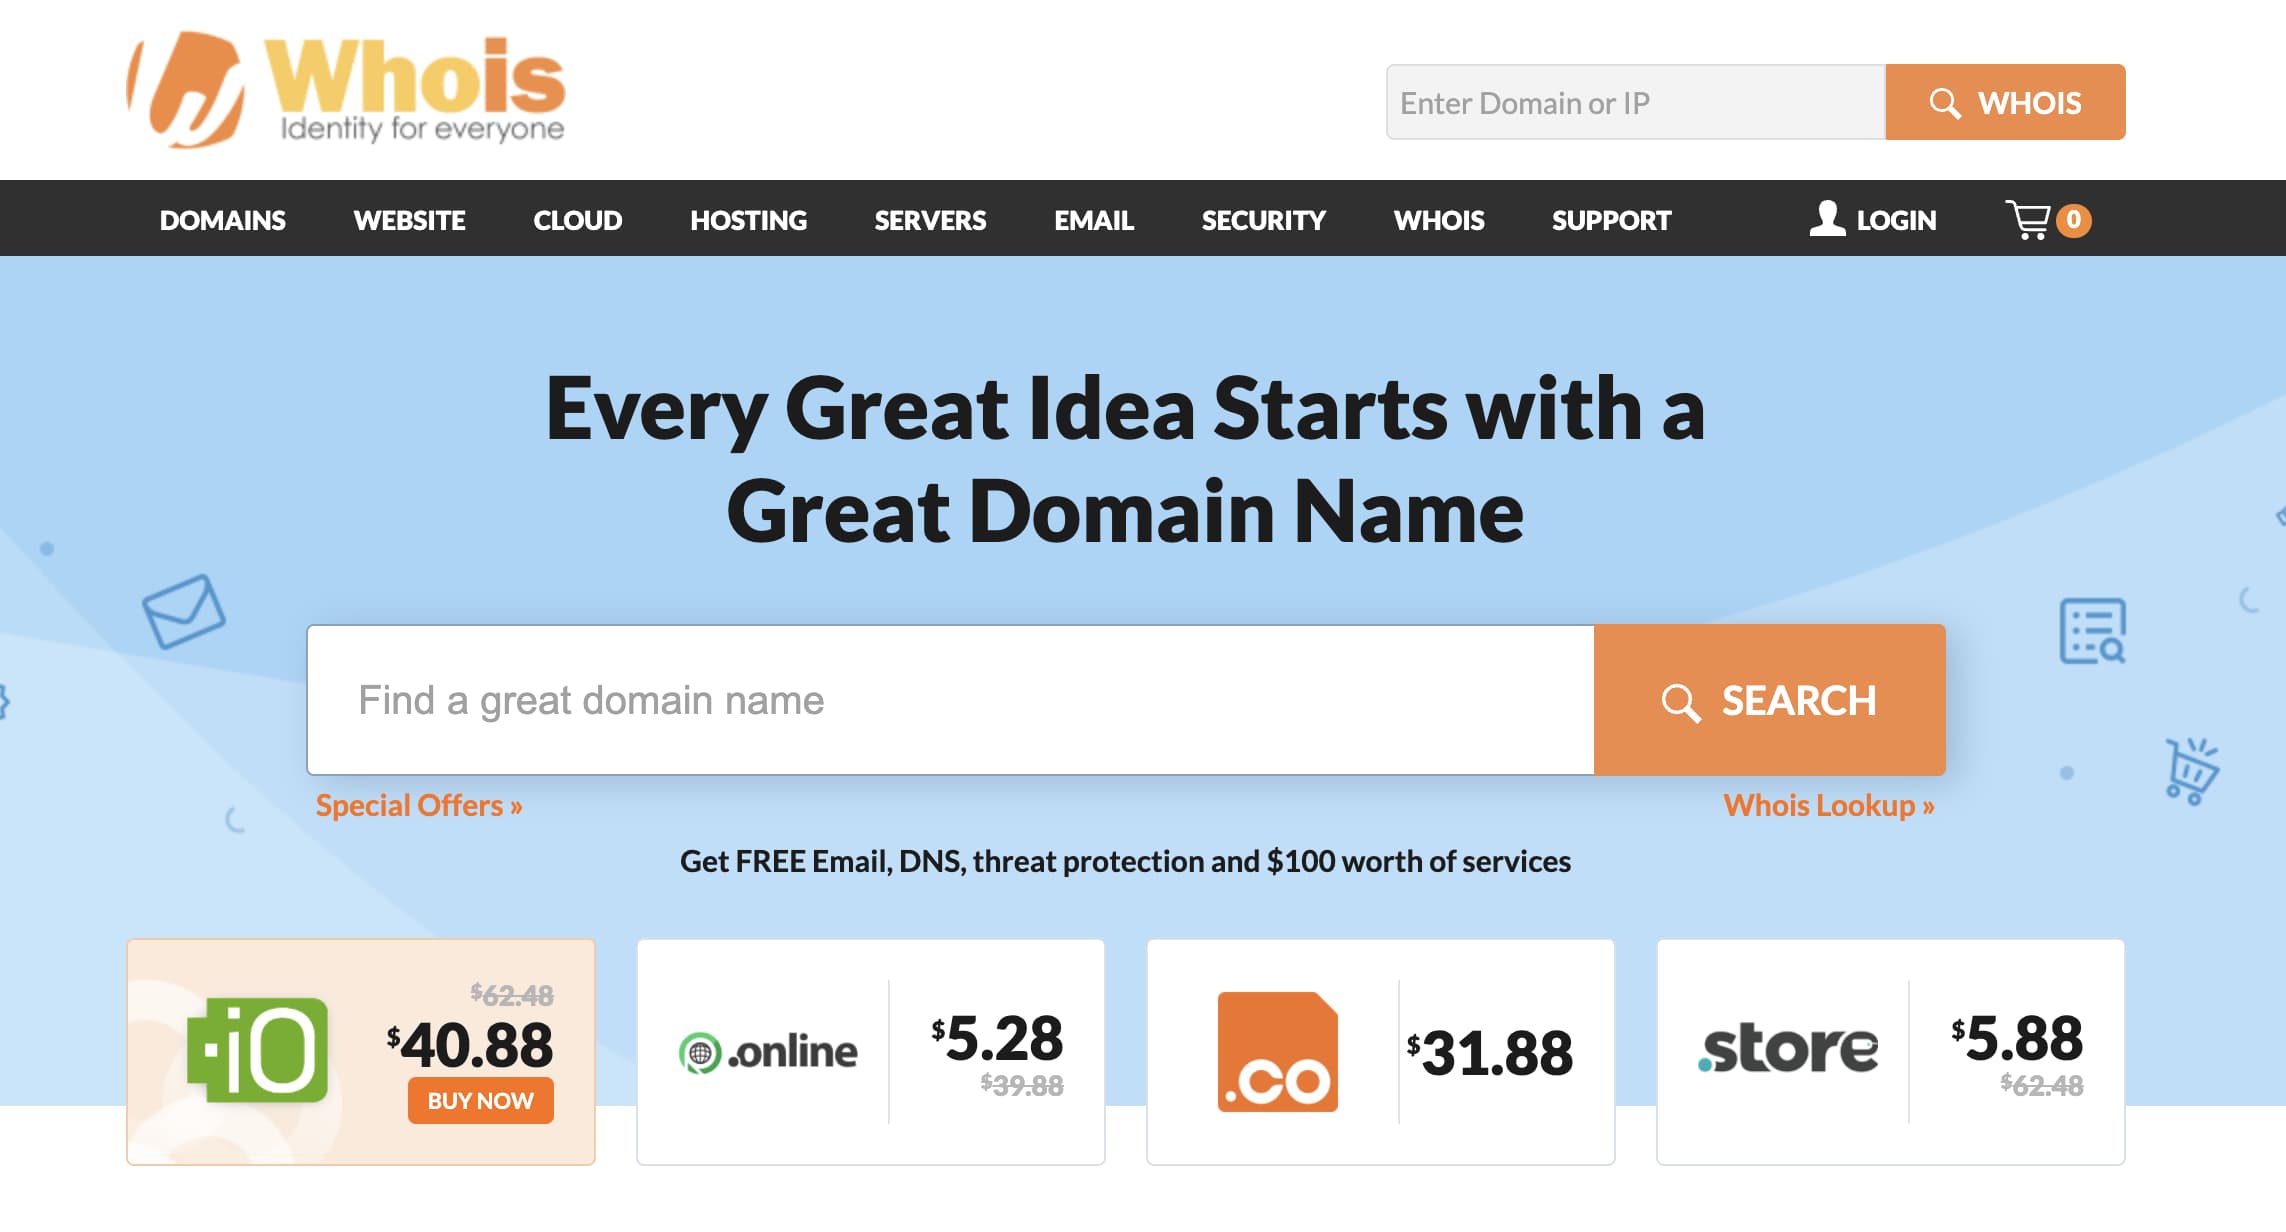 Dónde comprar un dominio y hosting: Whois